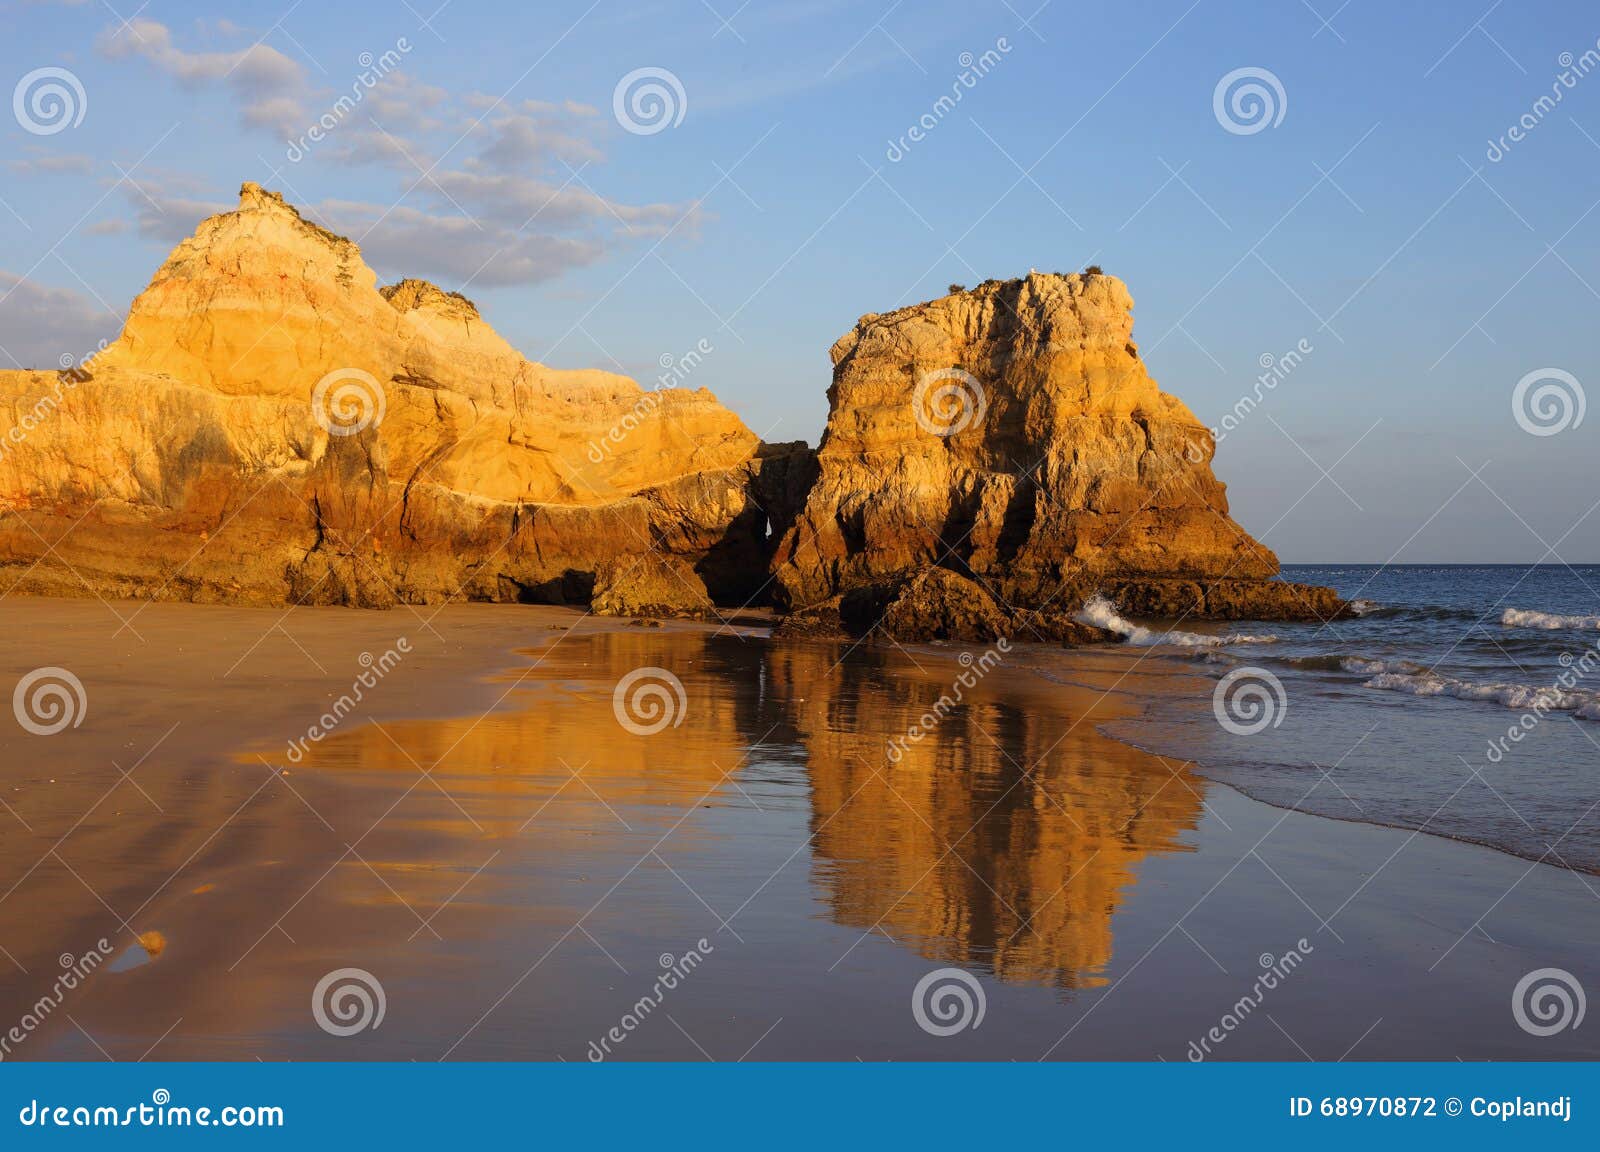 portugal, algarve, portimÃÂ£o, praia do vau. sandy beach and cliffs.